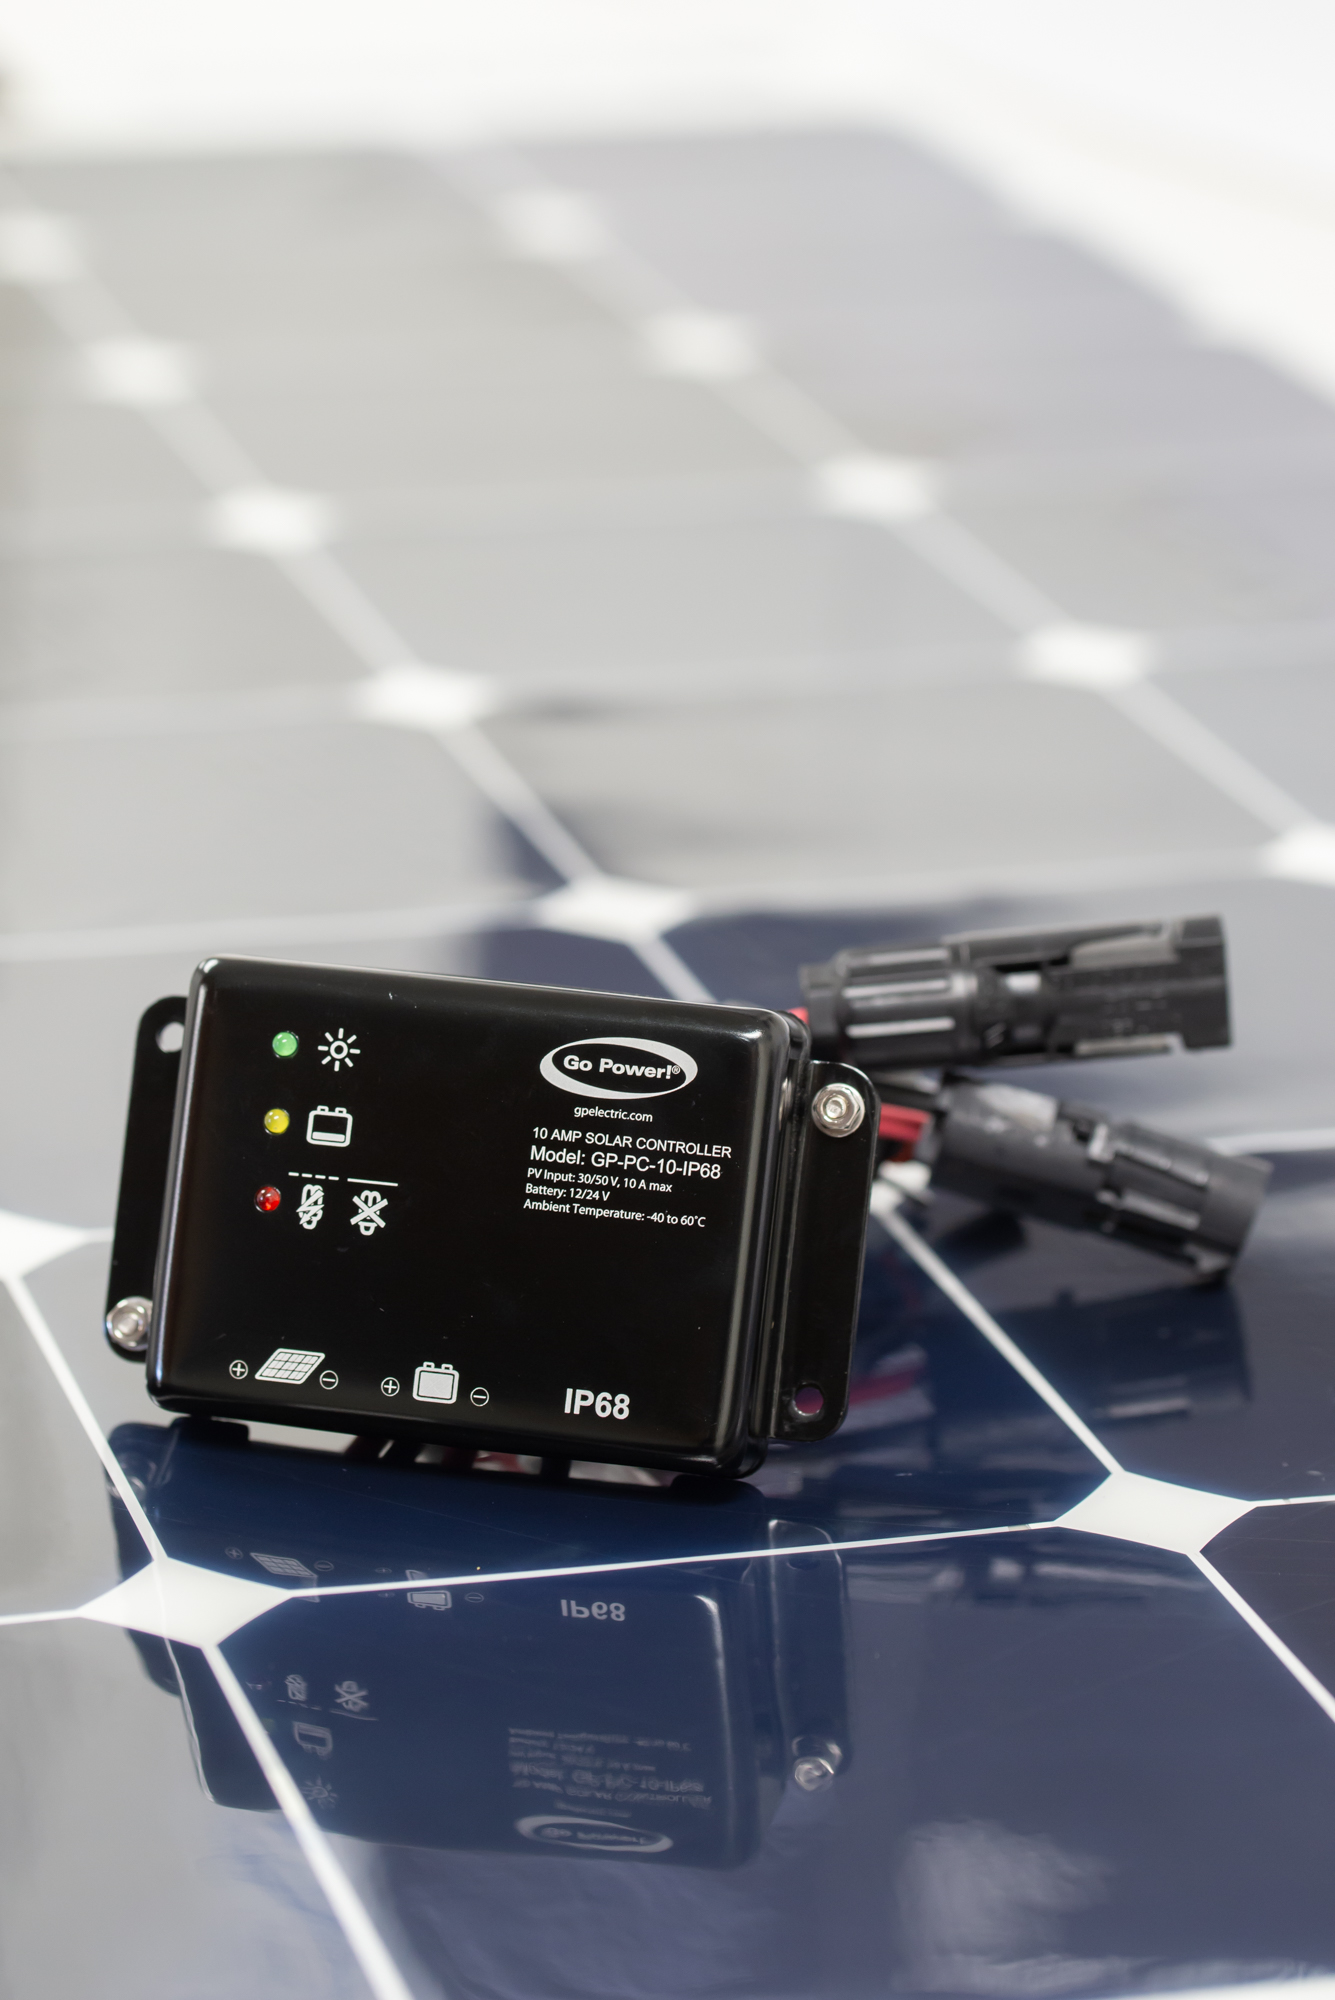 A Go Power Solar controller sitting on a solar panel